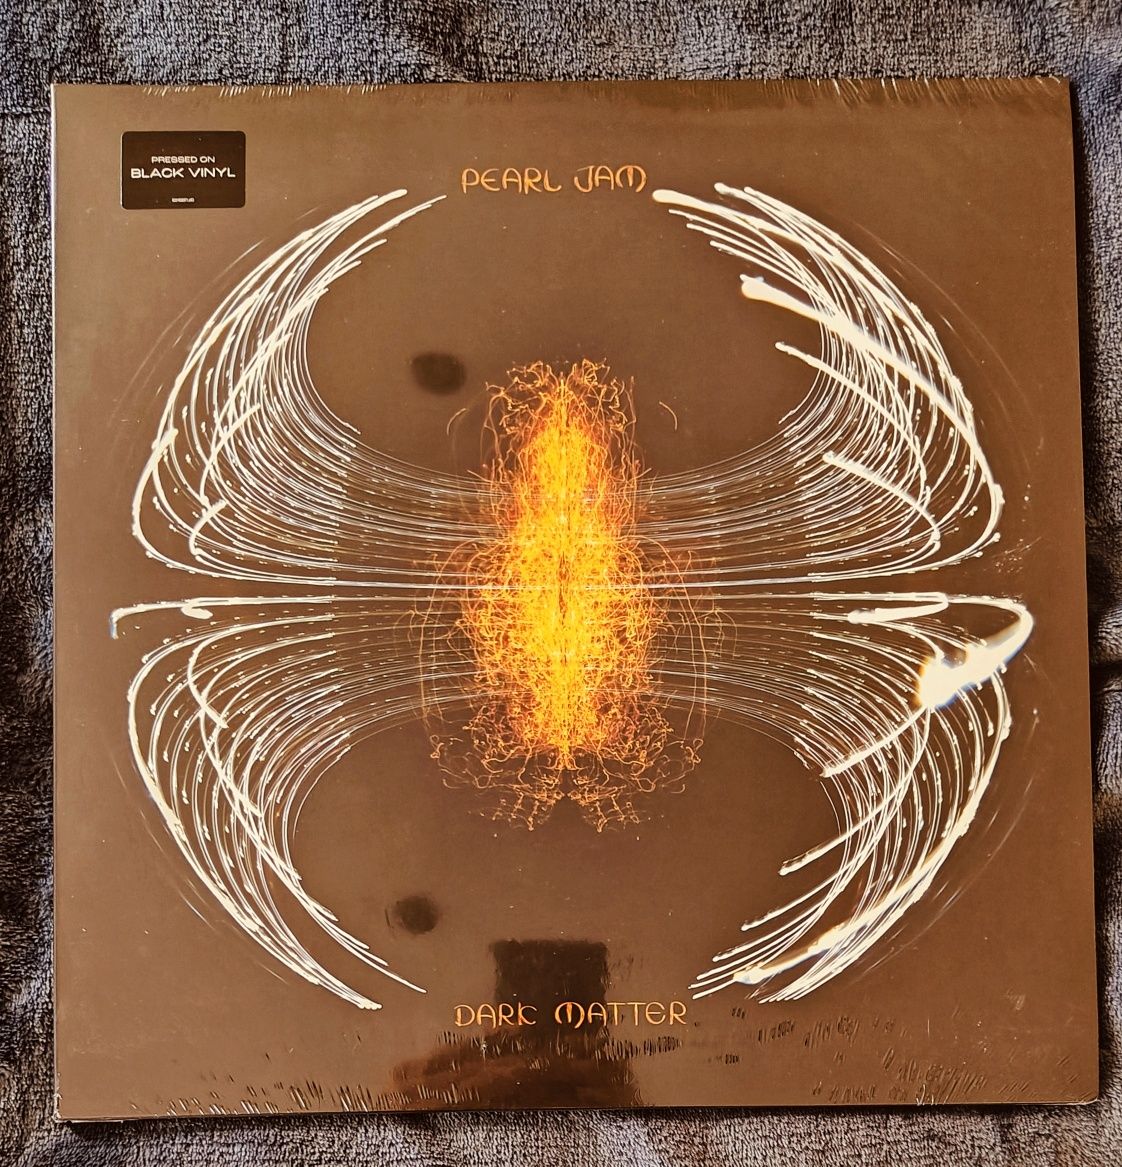 Pearl Jam - Dark Matter (LP) novo/selado